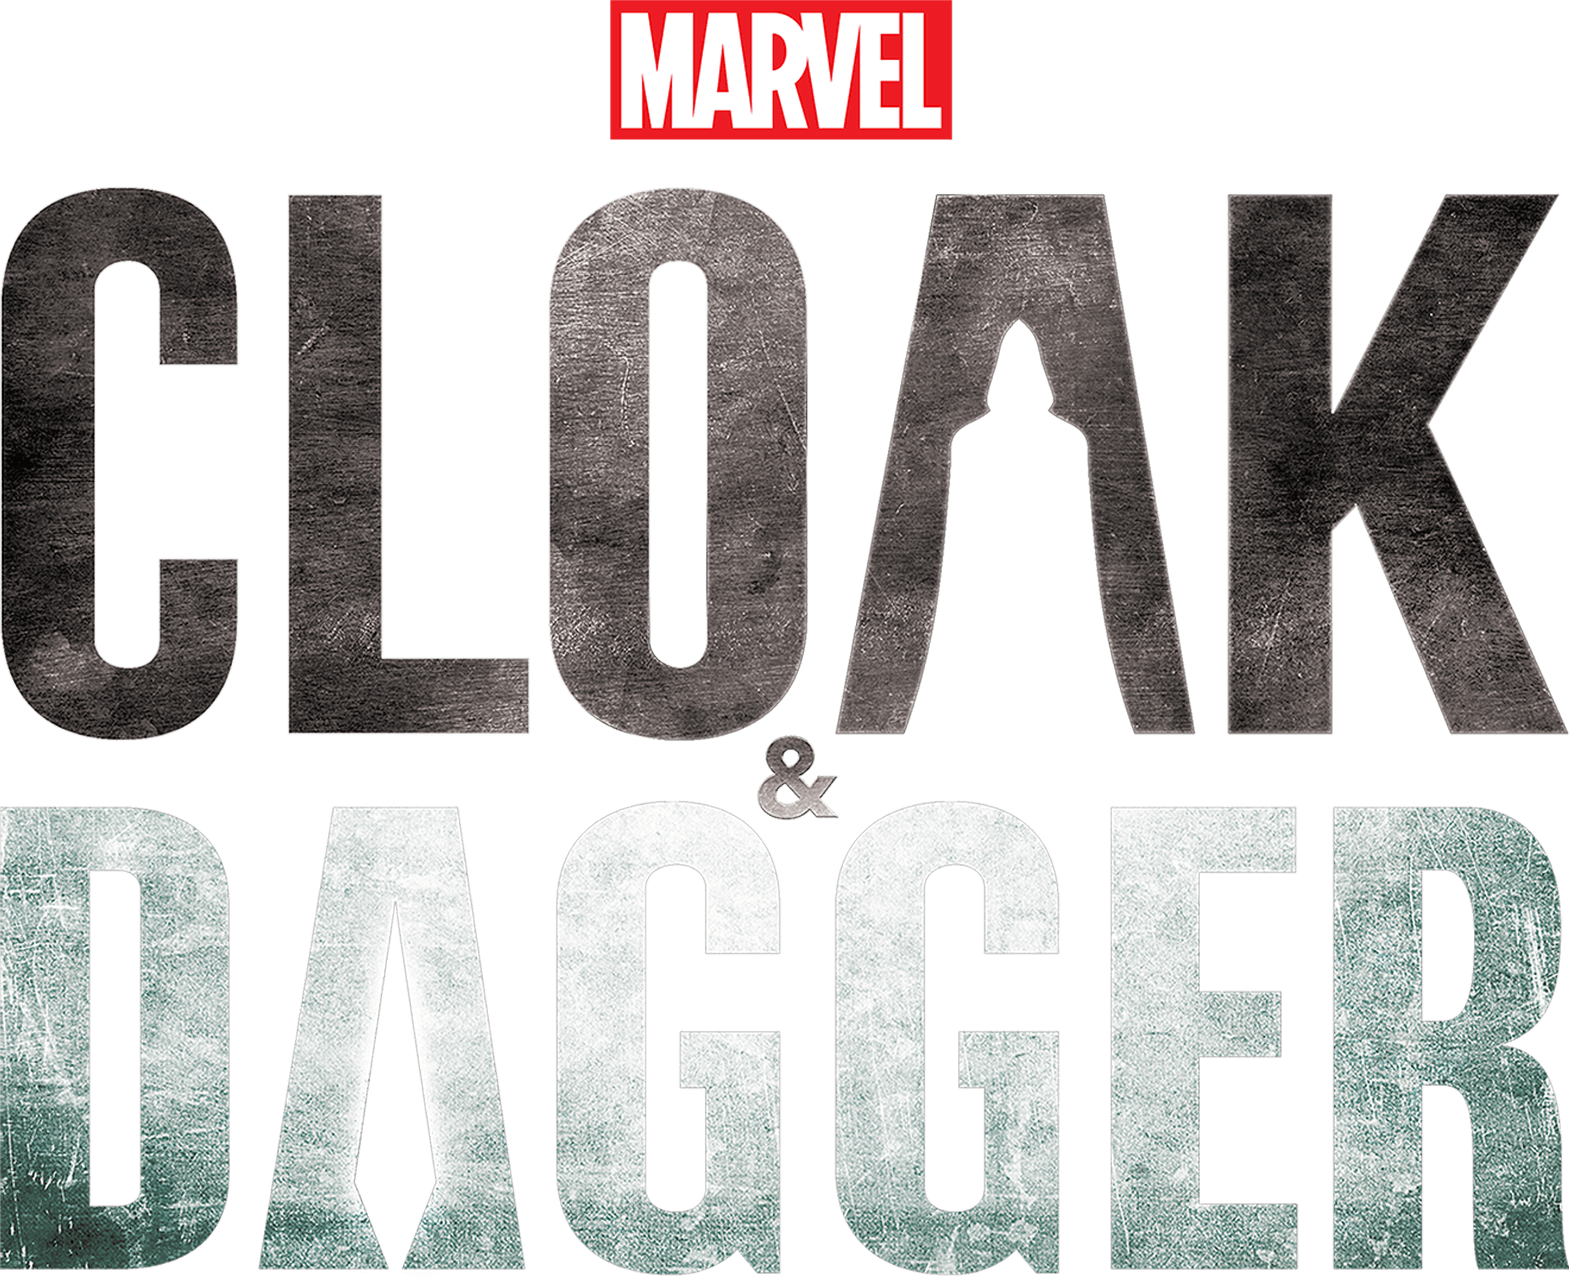 Marvel's Cloak & Dagger logo